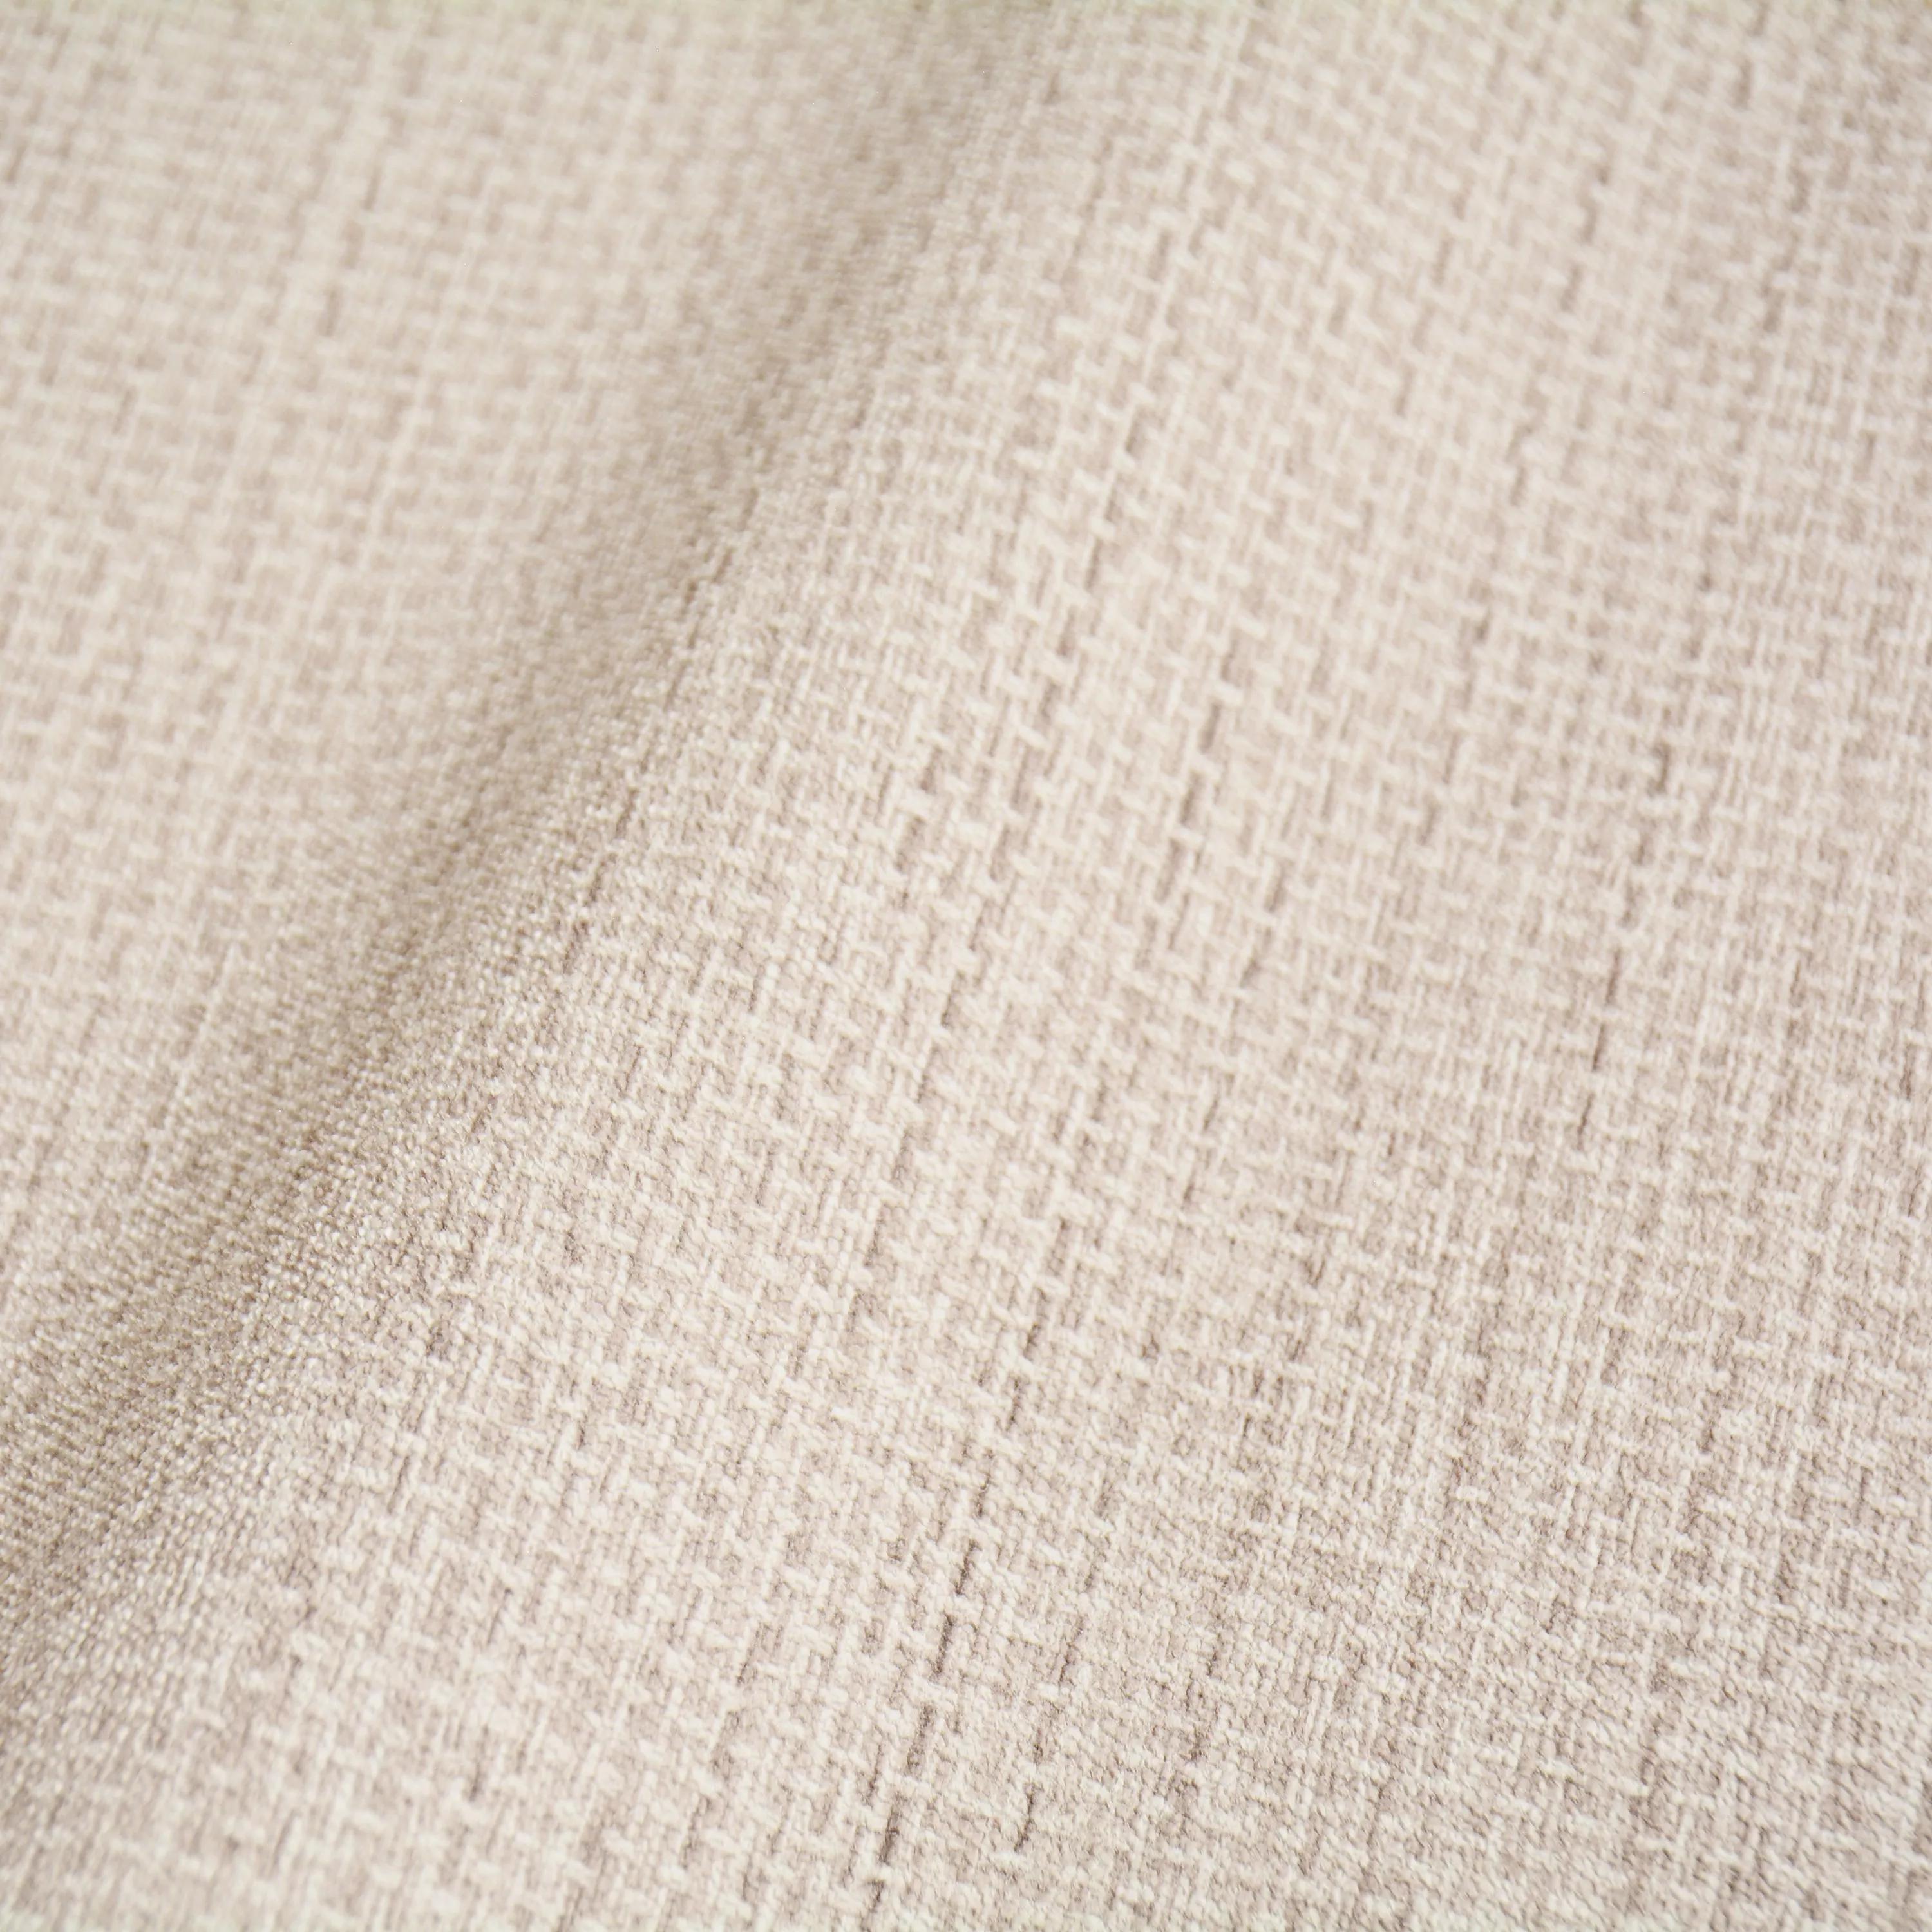 Krém bézs textil hatású vlies tapéta